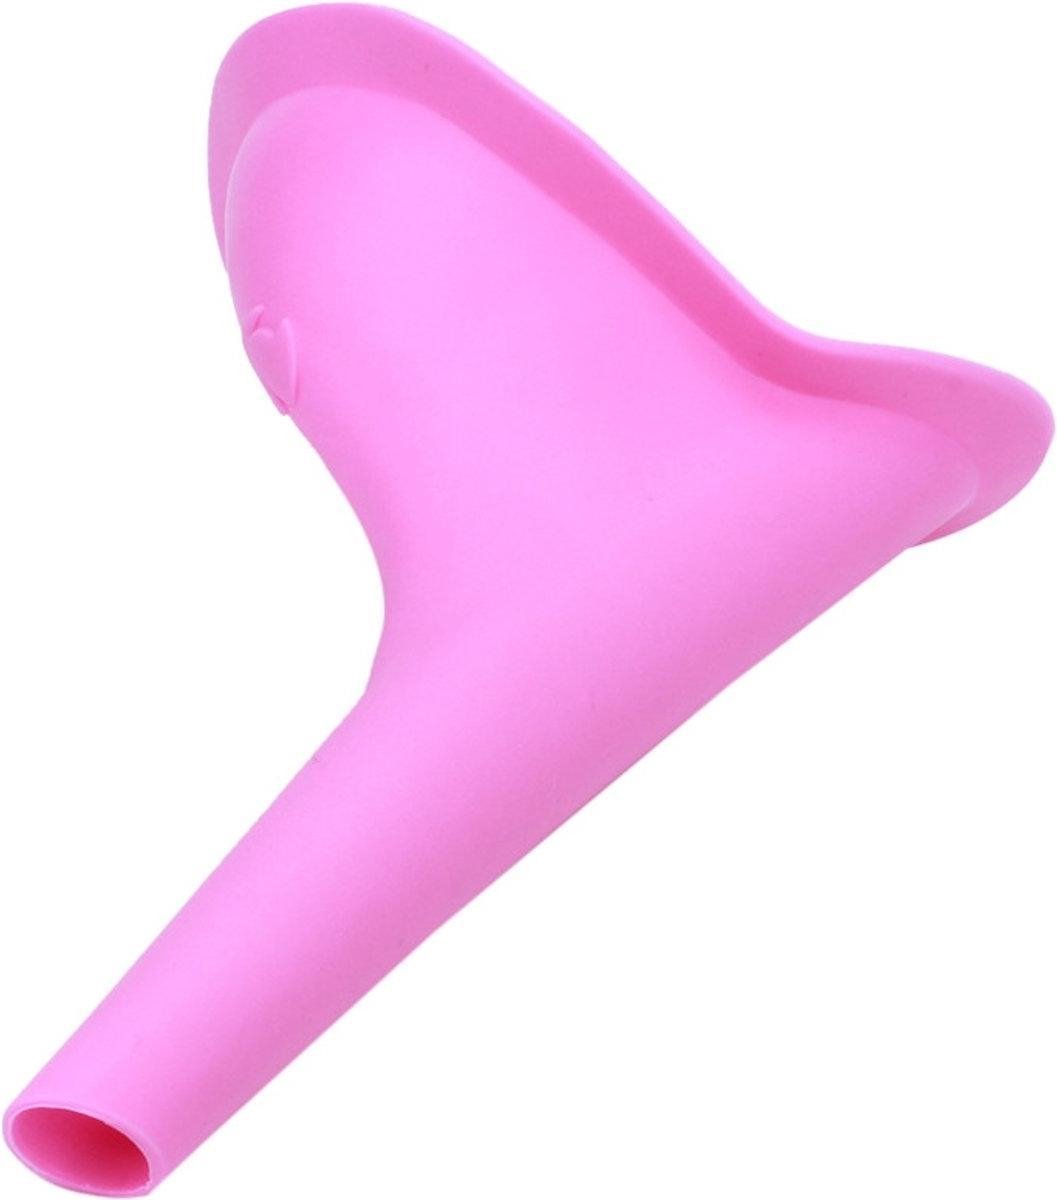 Plastuitje Vrouwen - Plastuit Roze - Plaskoker Siliconen - Herbruikbaar - Merkloos